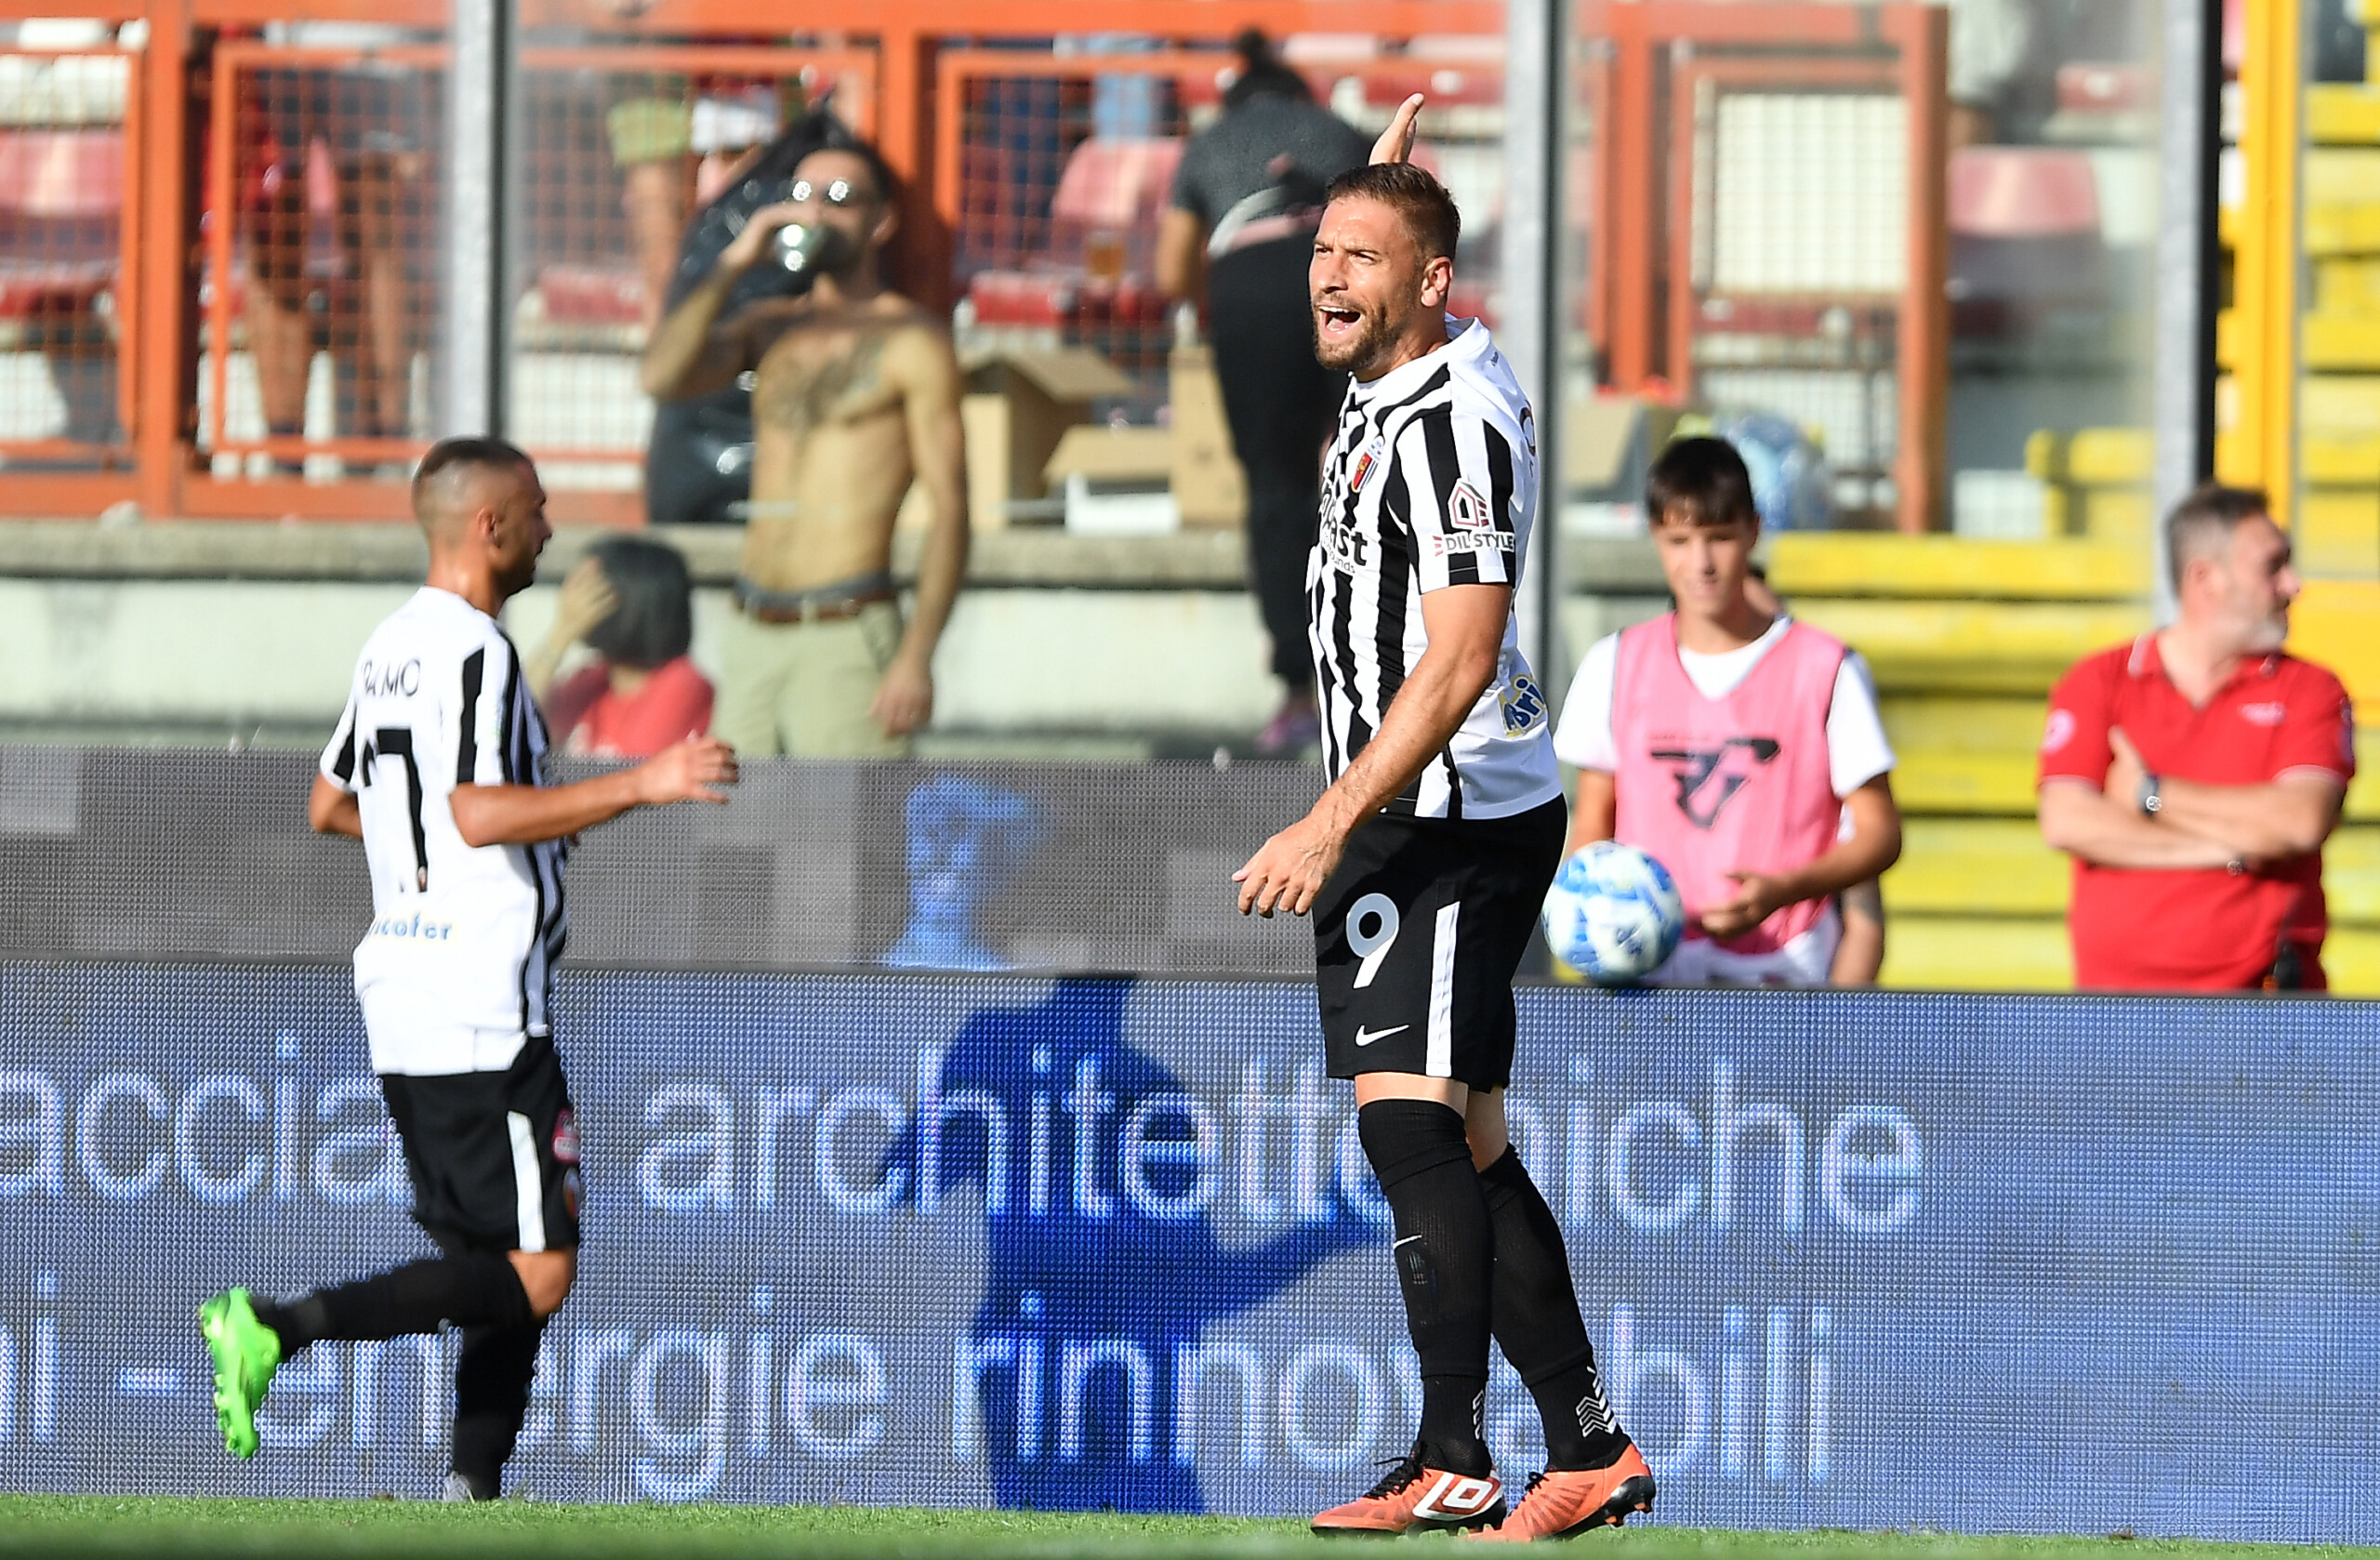 Post gara Perugia-Ascoli Dionisi: “Questa sconfitta dev’essere motivo di crescita”.